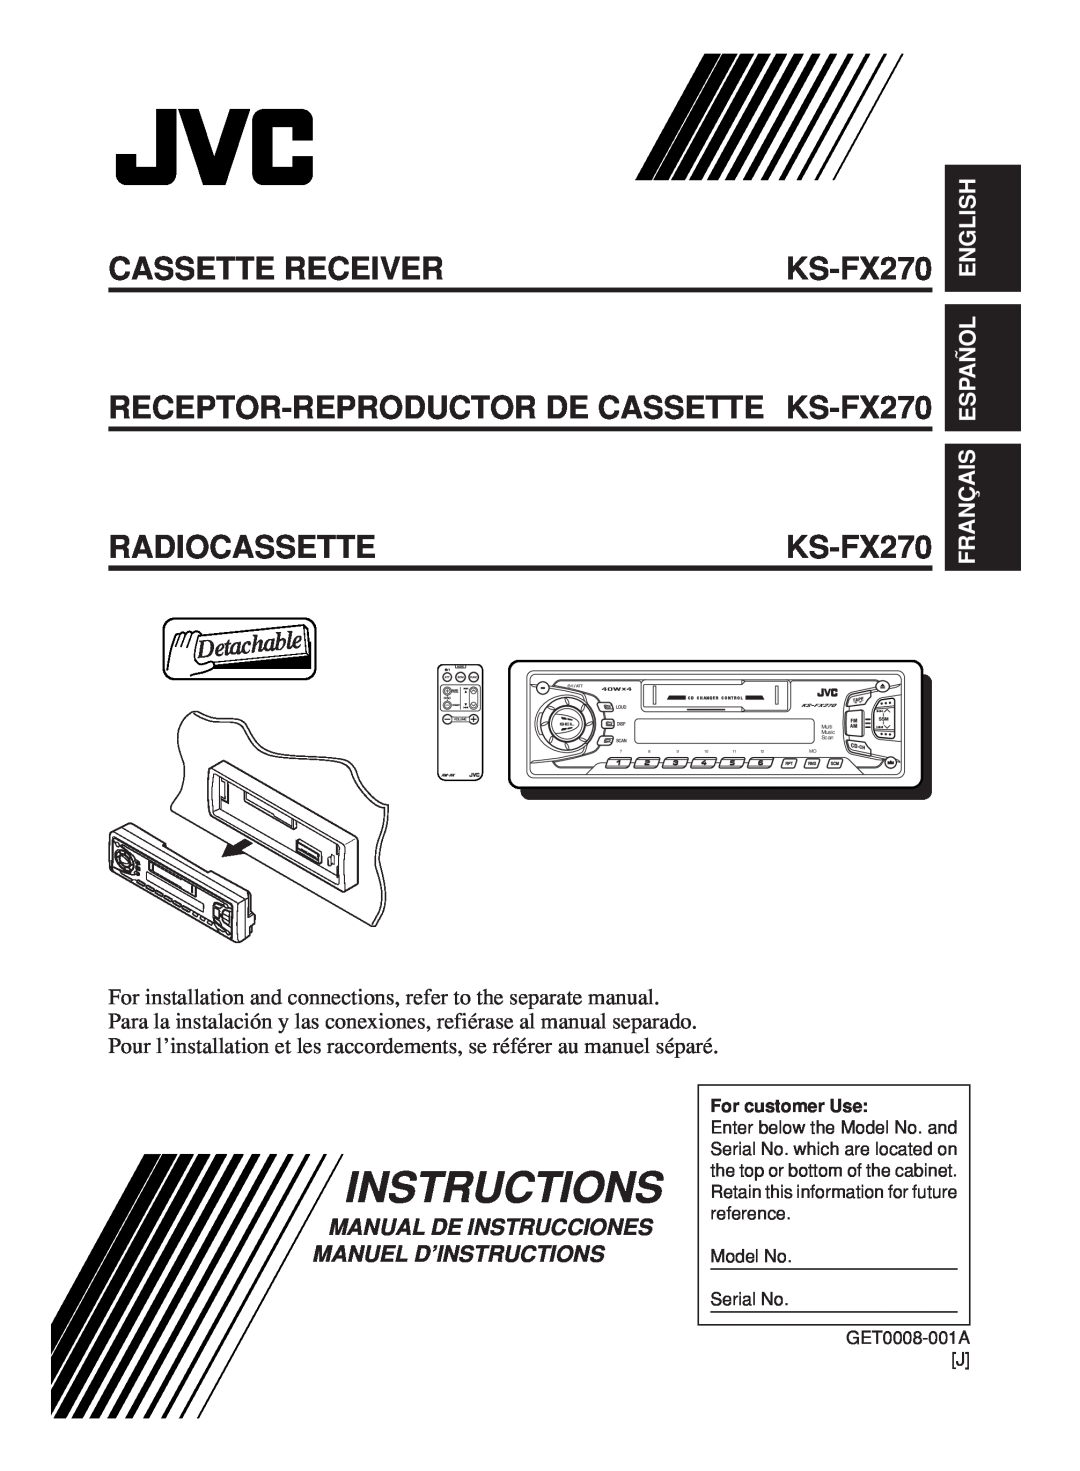 JVC KS-FX270 manual Français Español English, Manual De Instrucciones Manuel D’Instructions, Cassette Receiver 